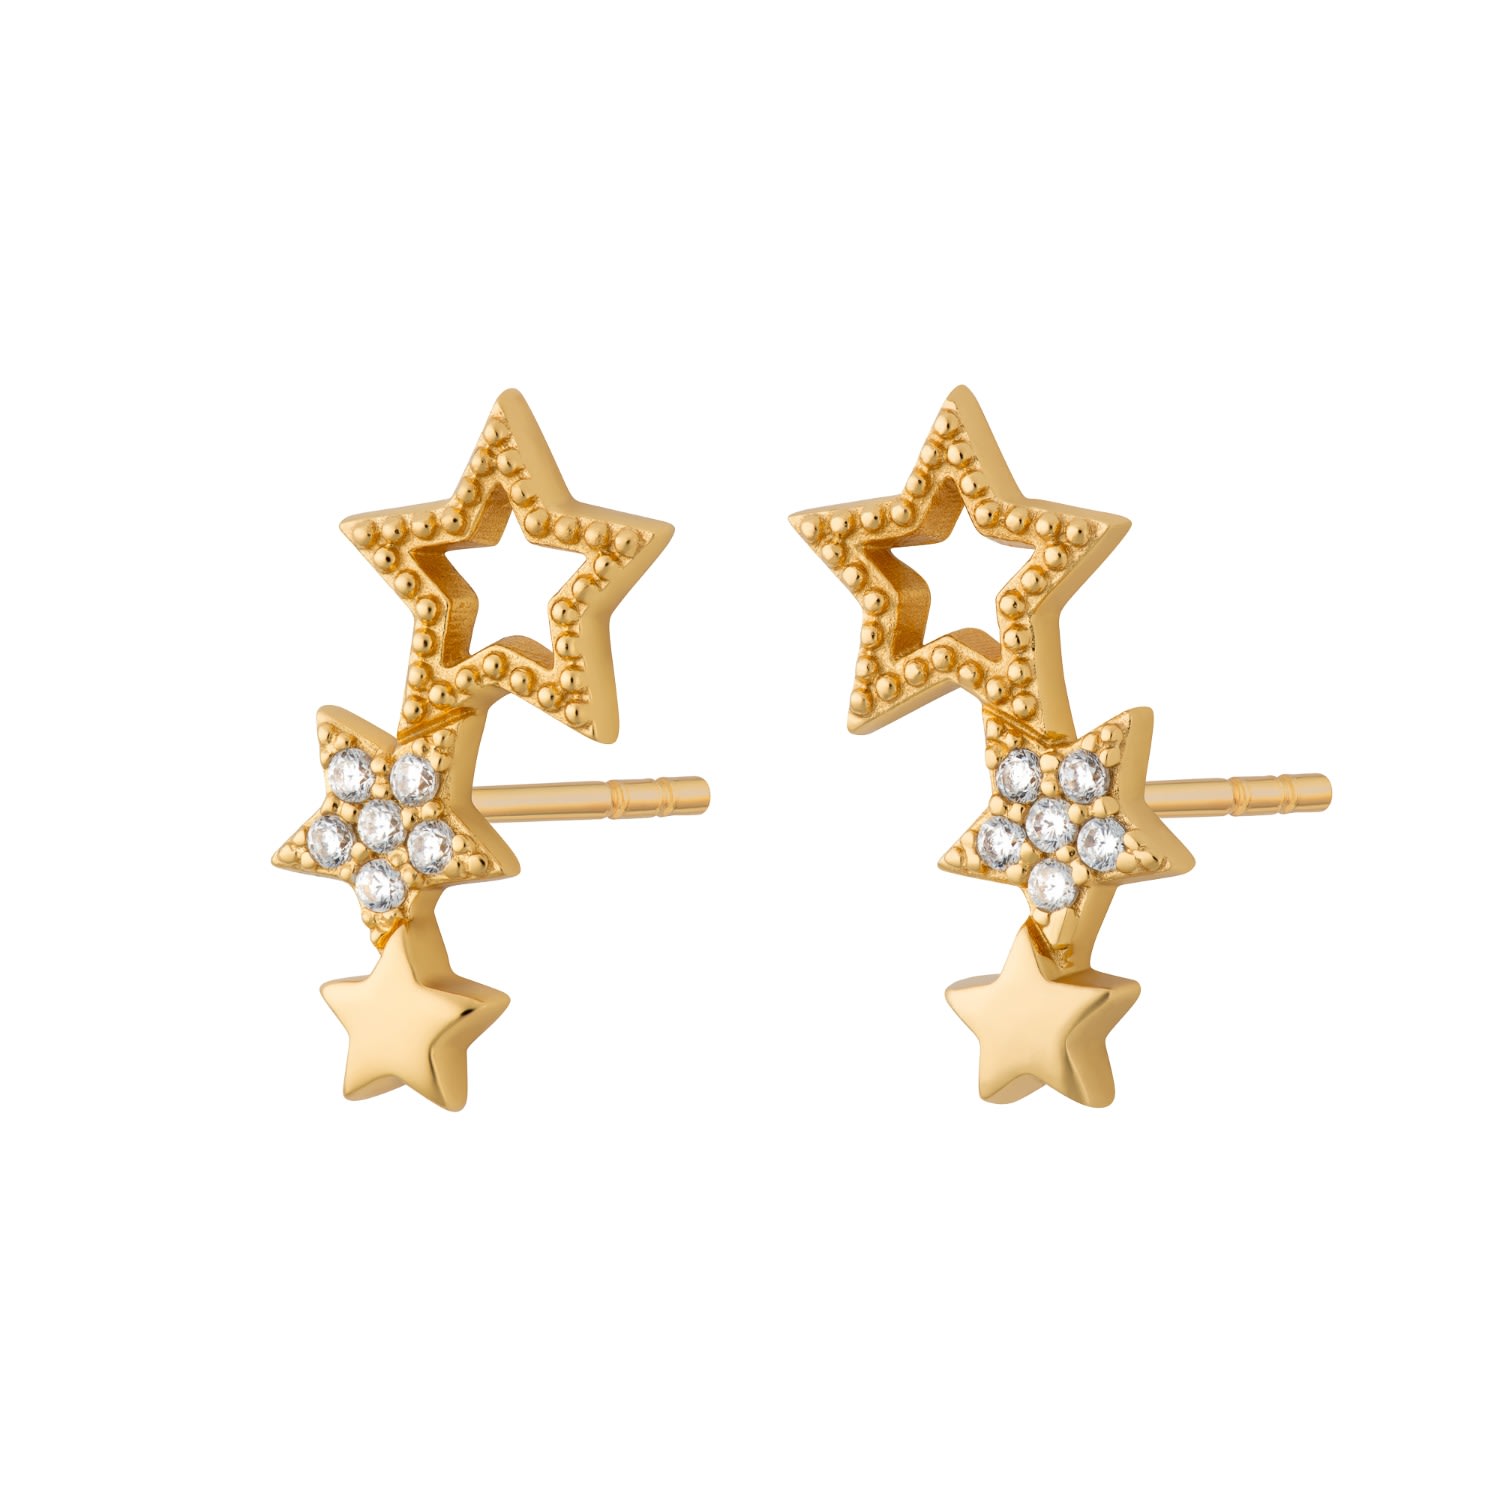 Shop Scream Pretty Women's Gold Star Ear Climber Stud Earrings